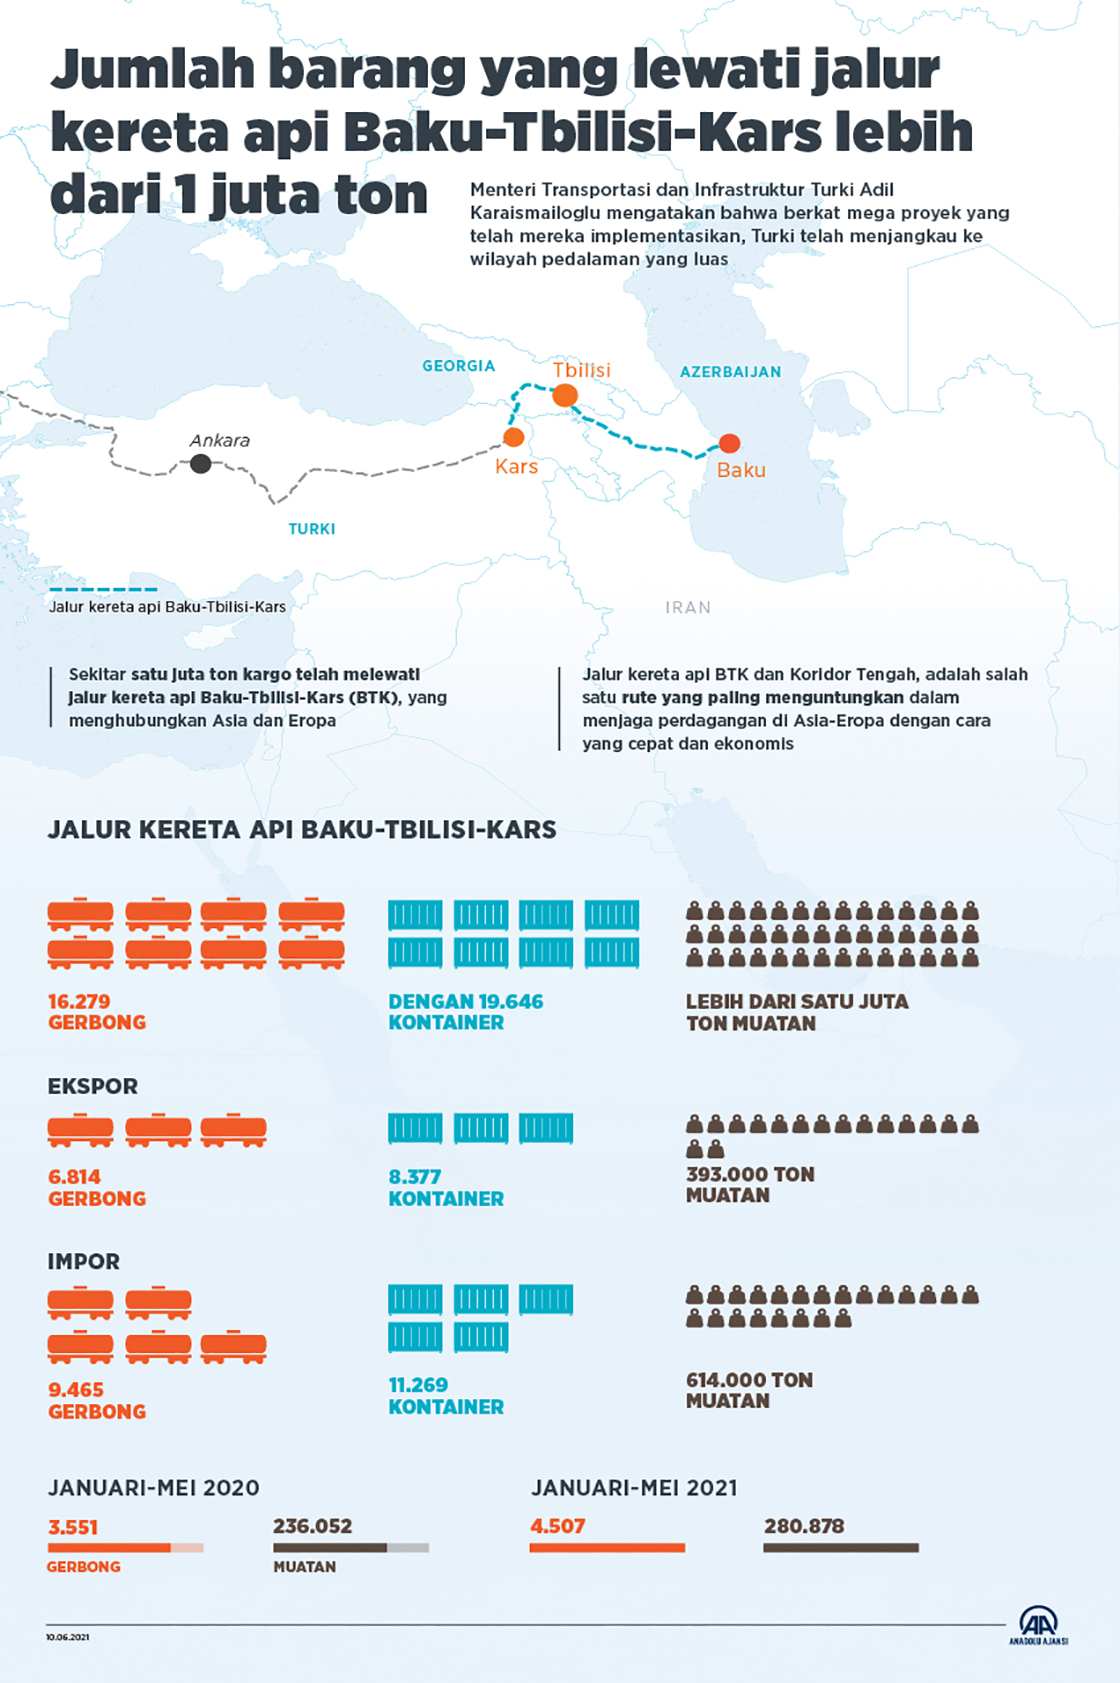 Jumlah barang yang lewati jalur kereta api Baku-Tbilisi-Kars lebih dari 1 juta ton